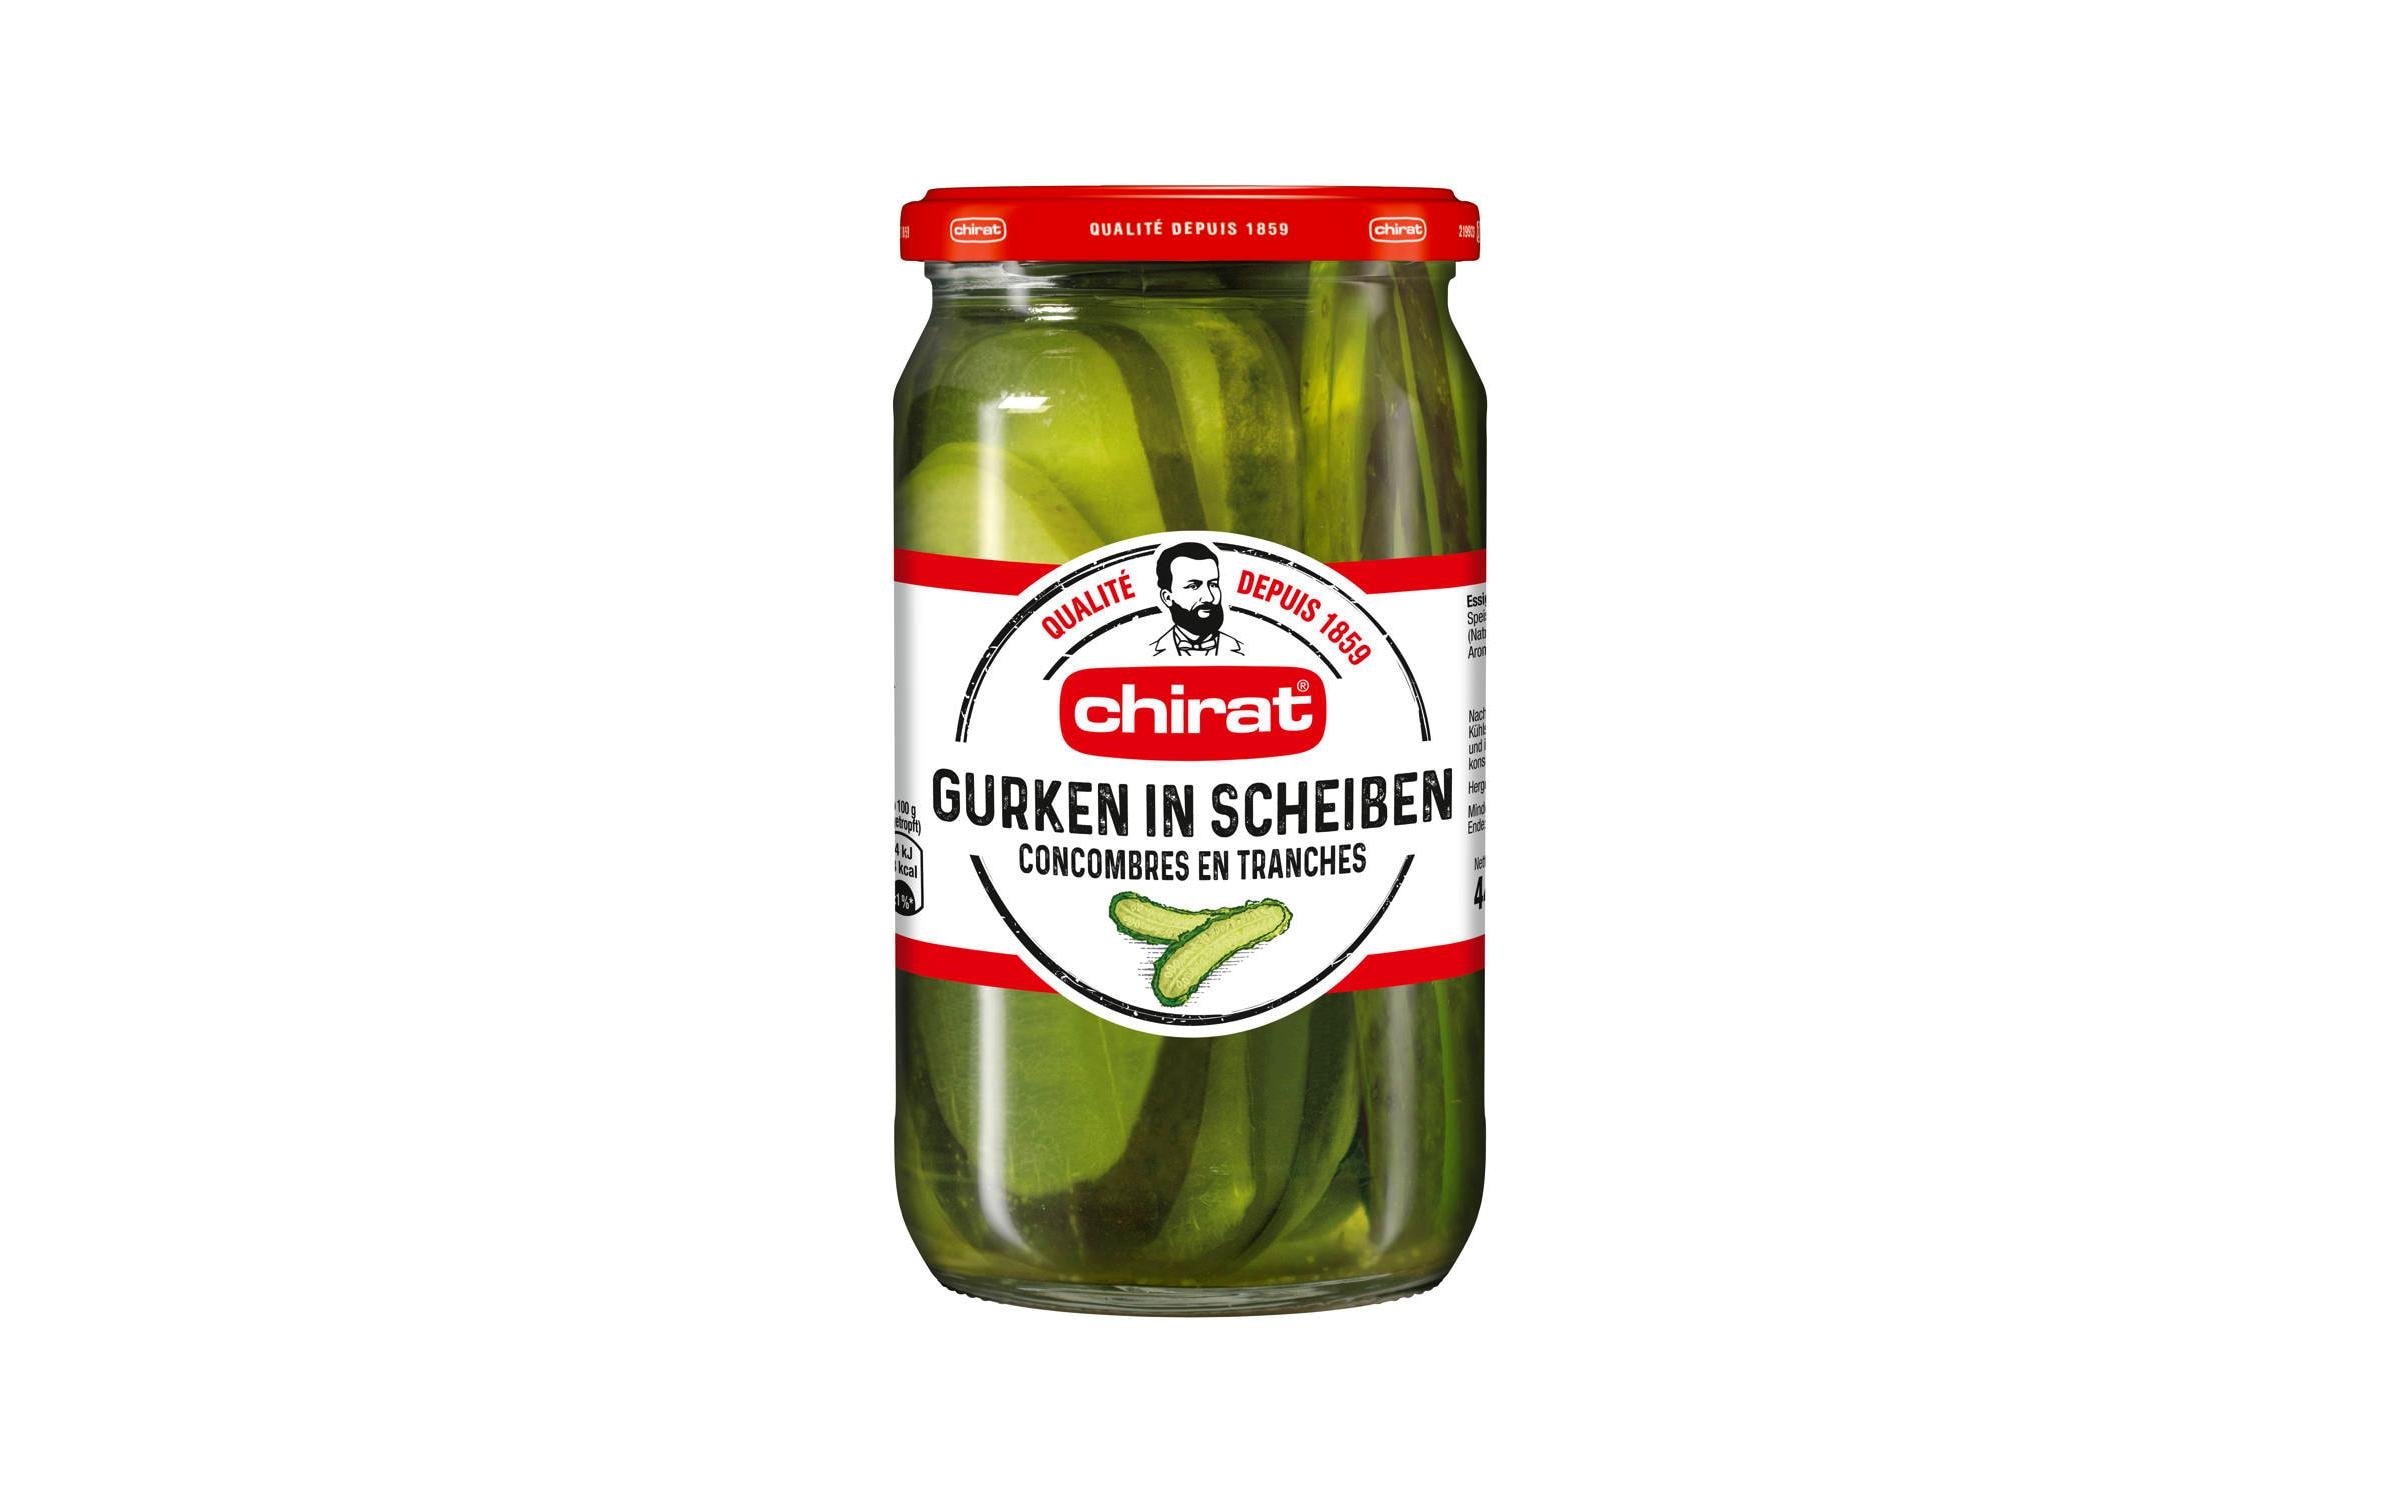 Chirat Gurken in Scheiben 445 g